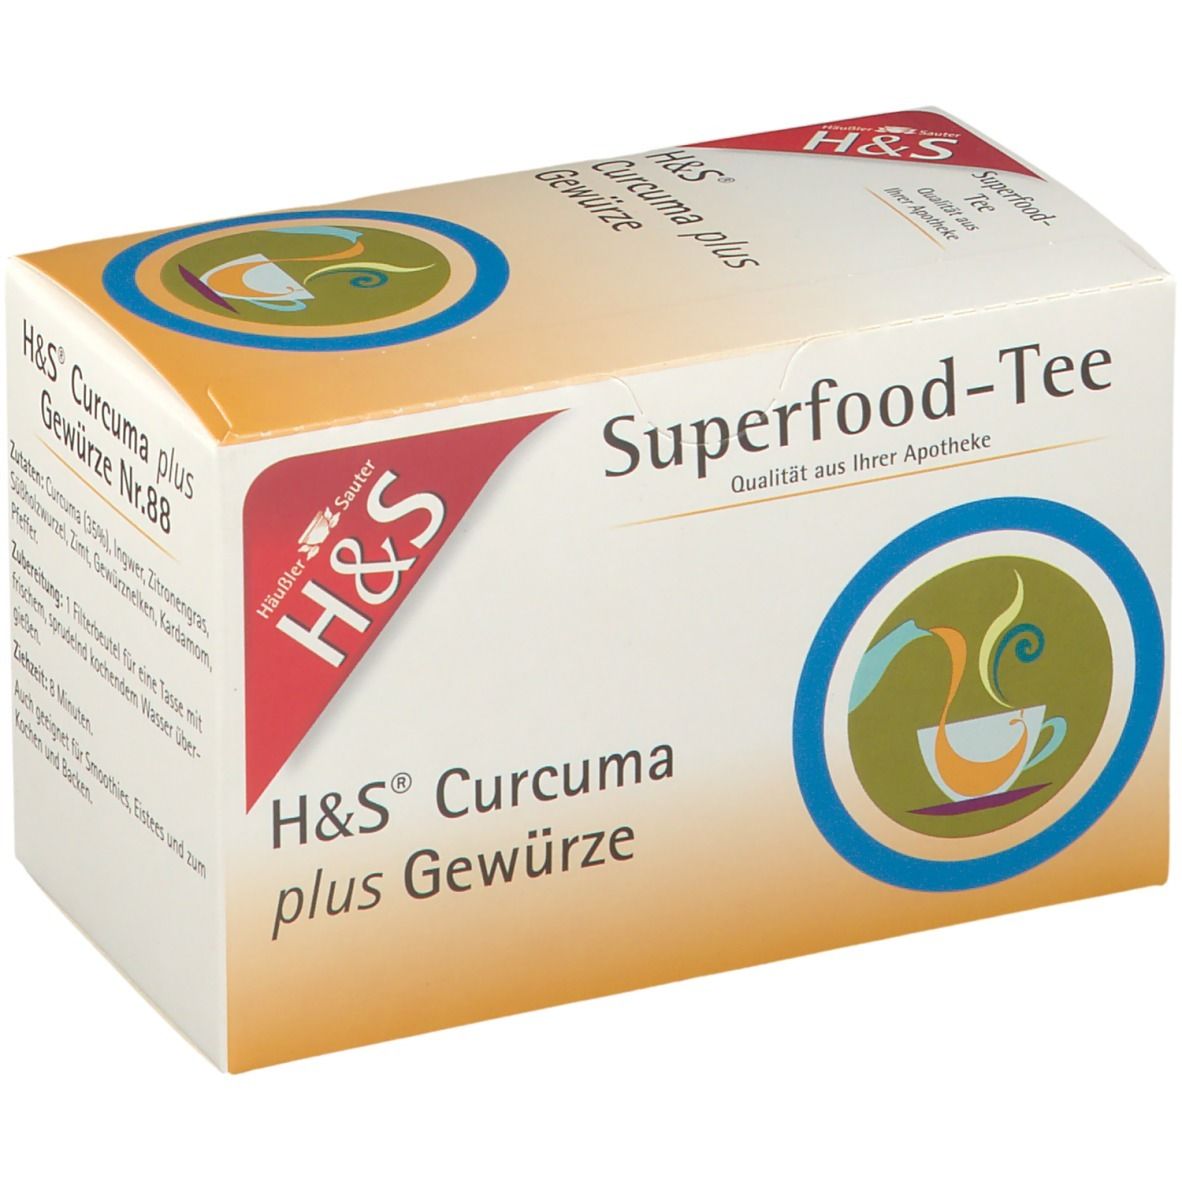 H&S Superfood Tee Curcuma plus Gewürze